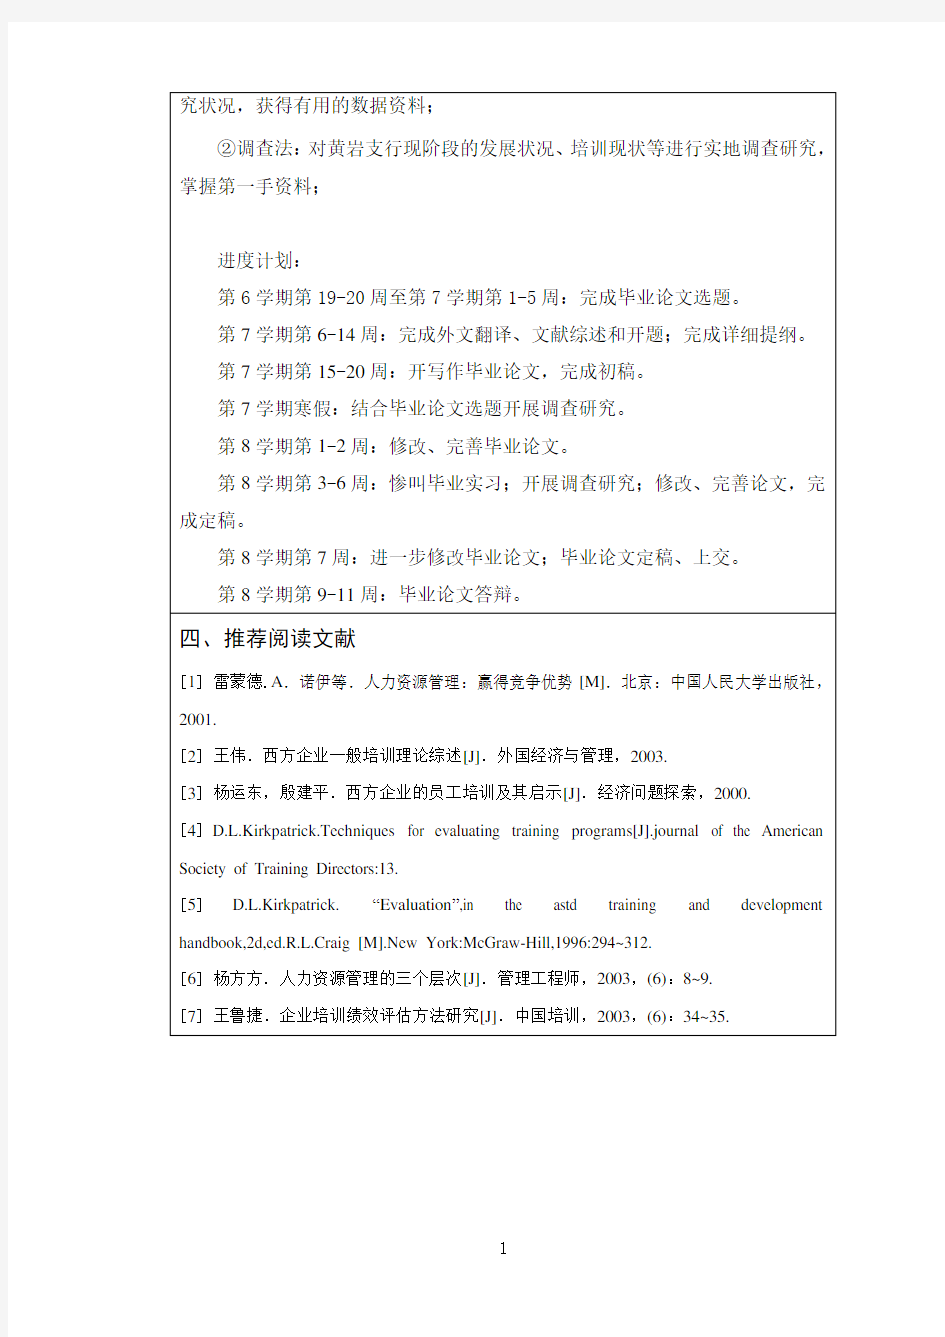 中国银行员工培训的现状及对策研究【任务书】